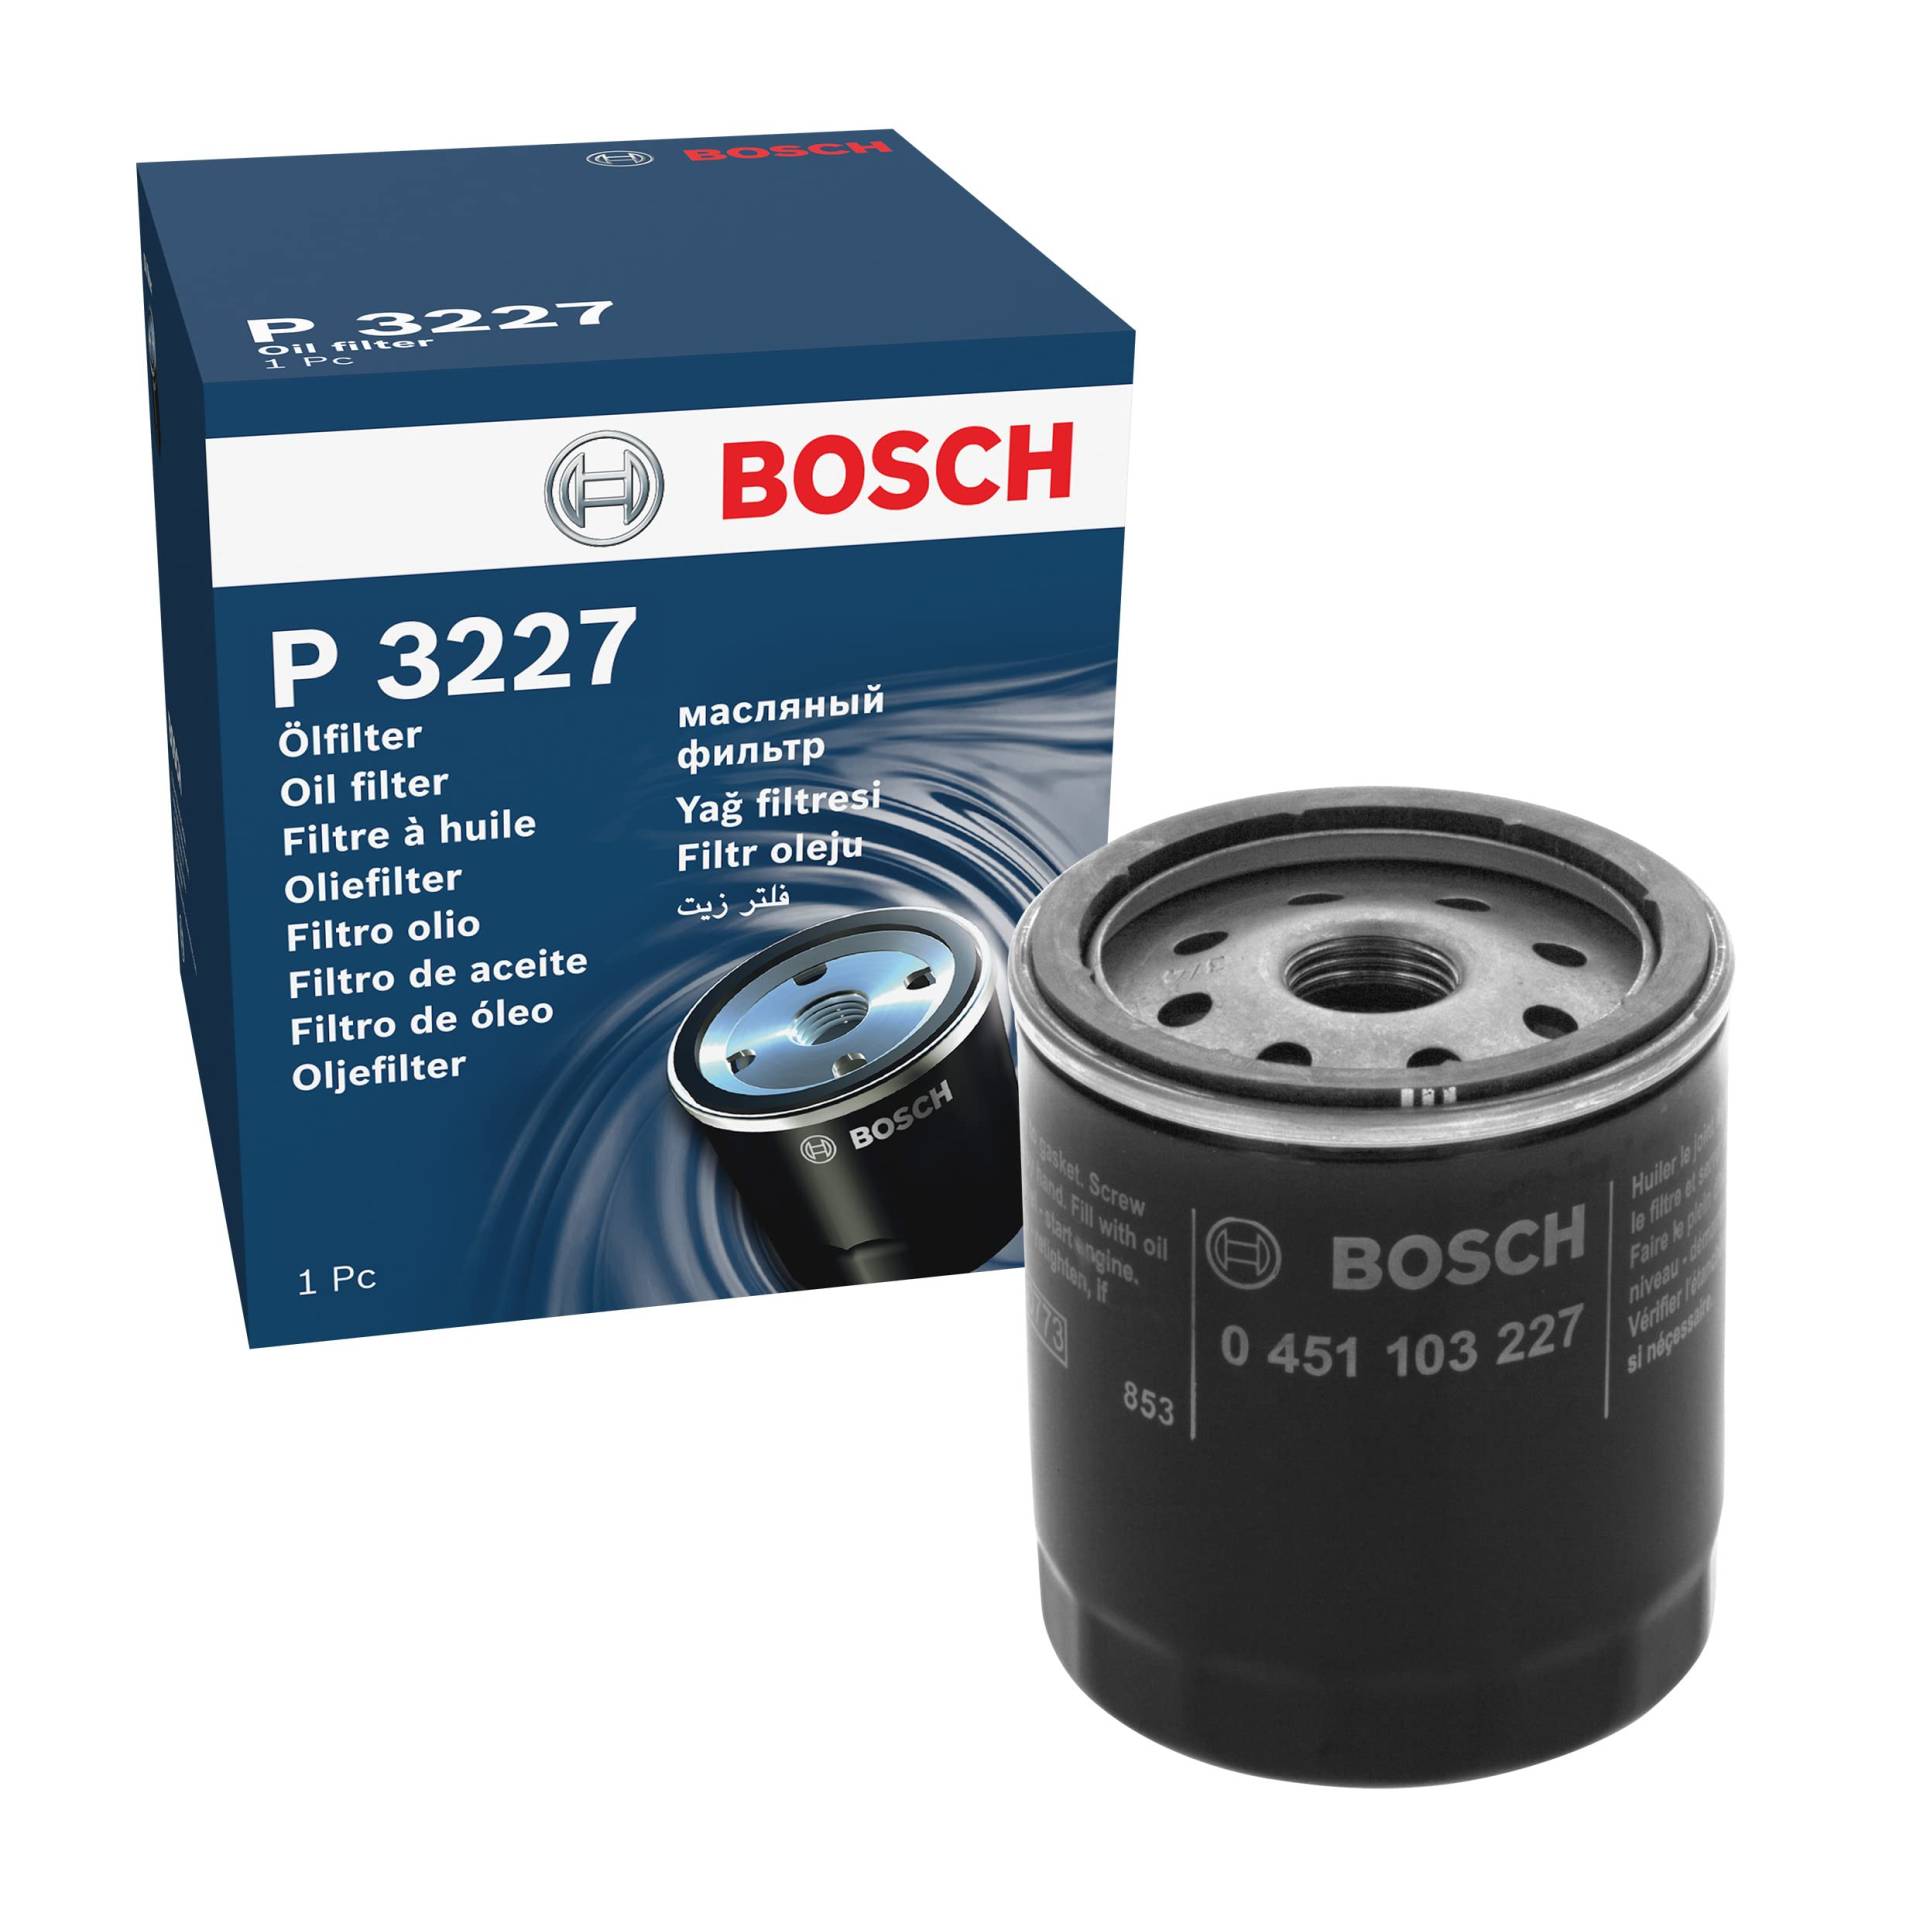 Bosch P3227 - Ölfilter Auto von Bosch Automotive